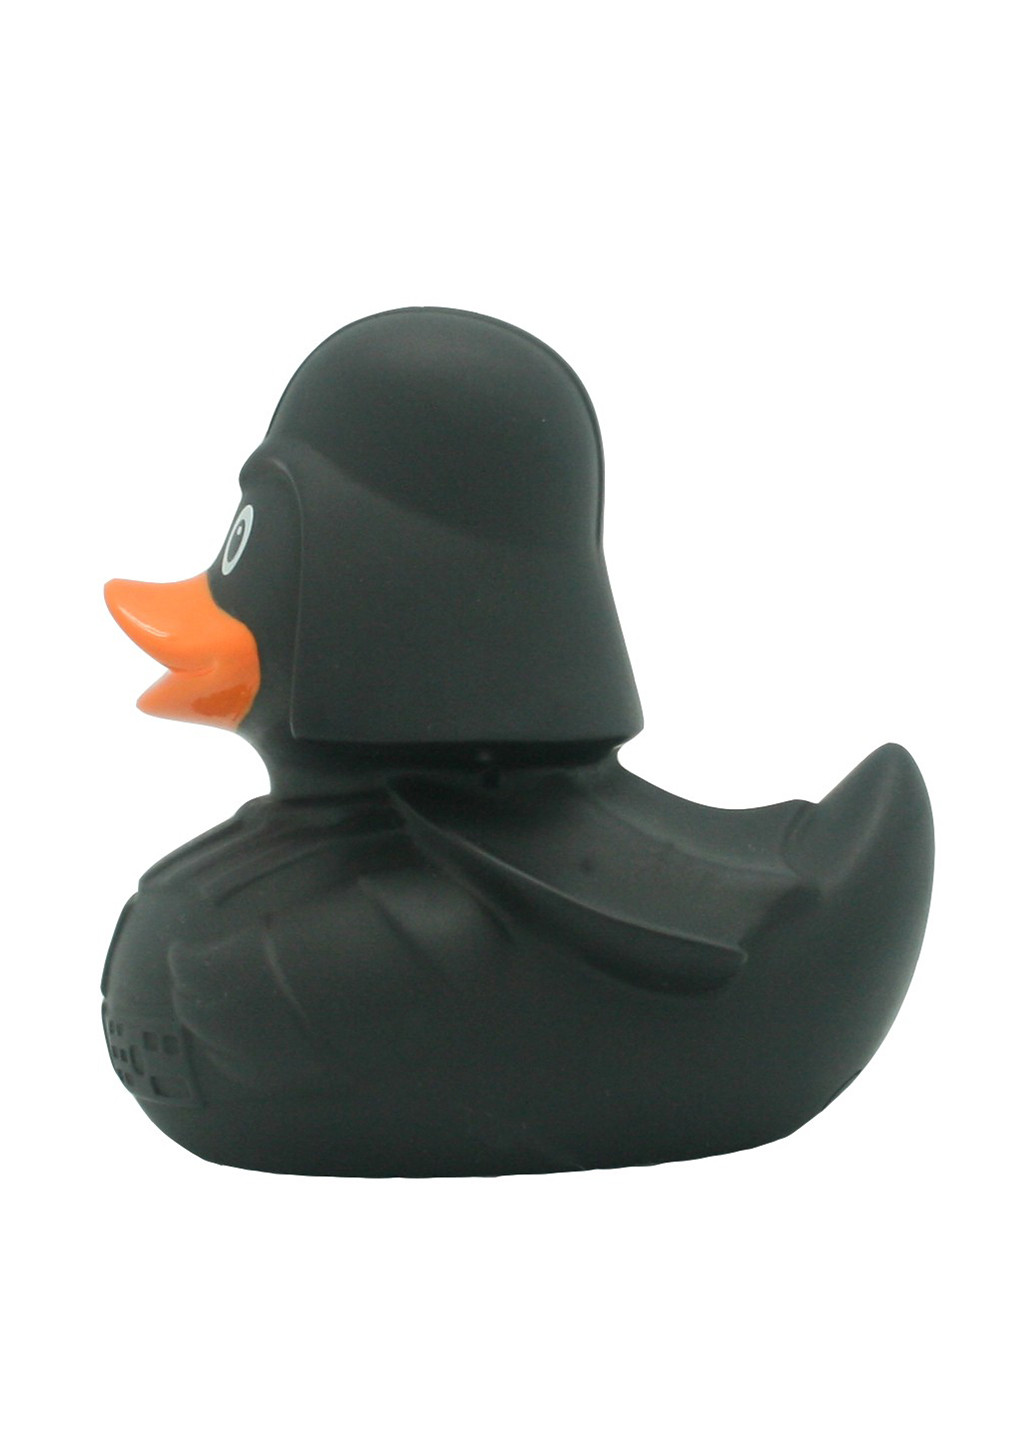 Іграшка для купання Качка Black Star, 8,5x8,5x7,5 см Funny Ducks (250618779)